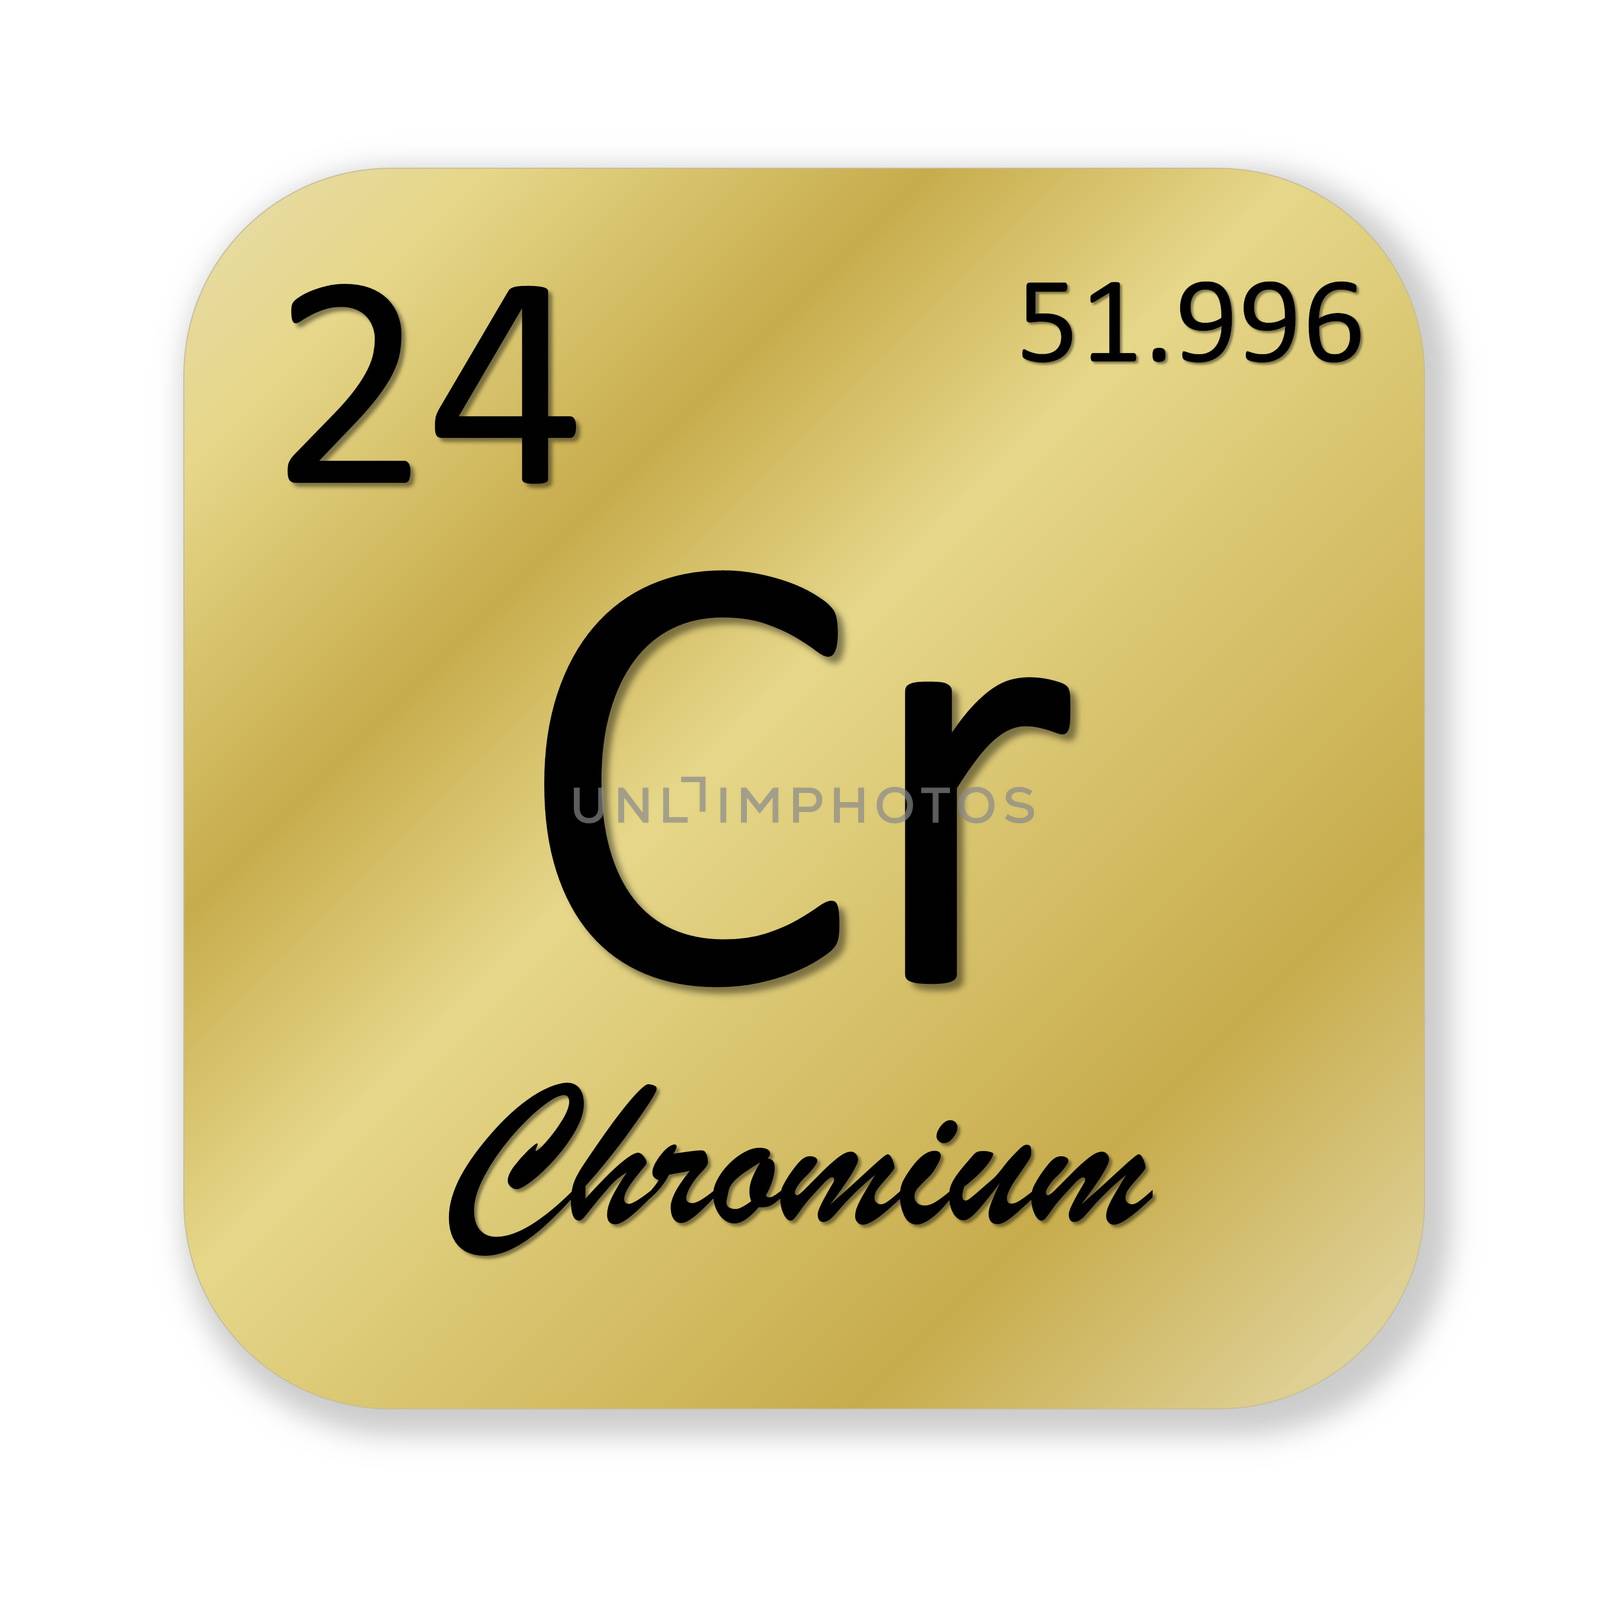 Chromium element by Elenaphotos21